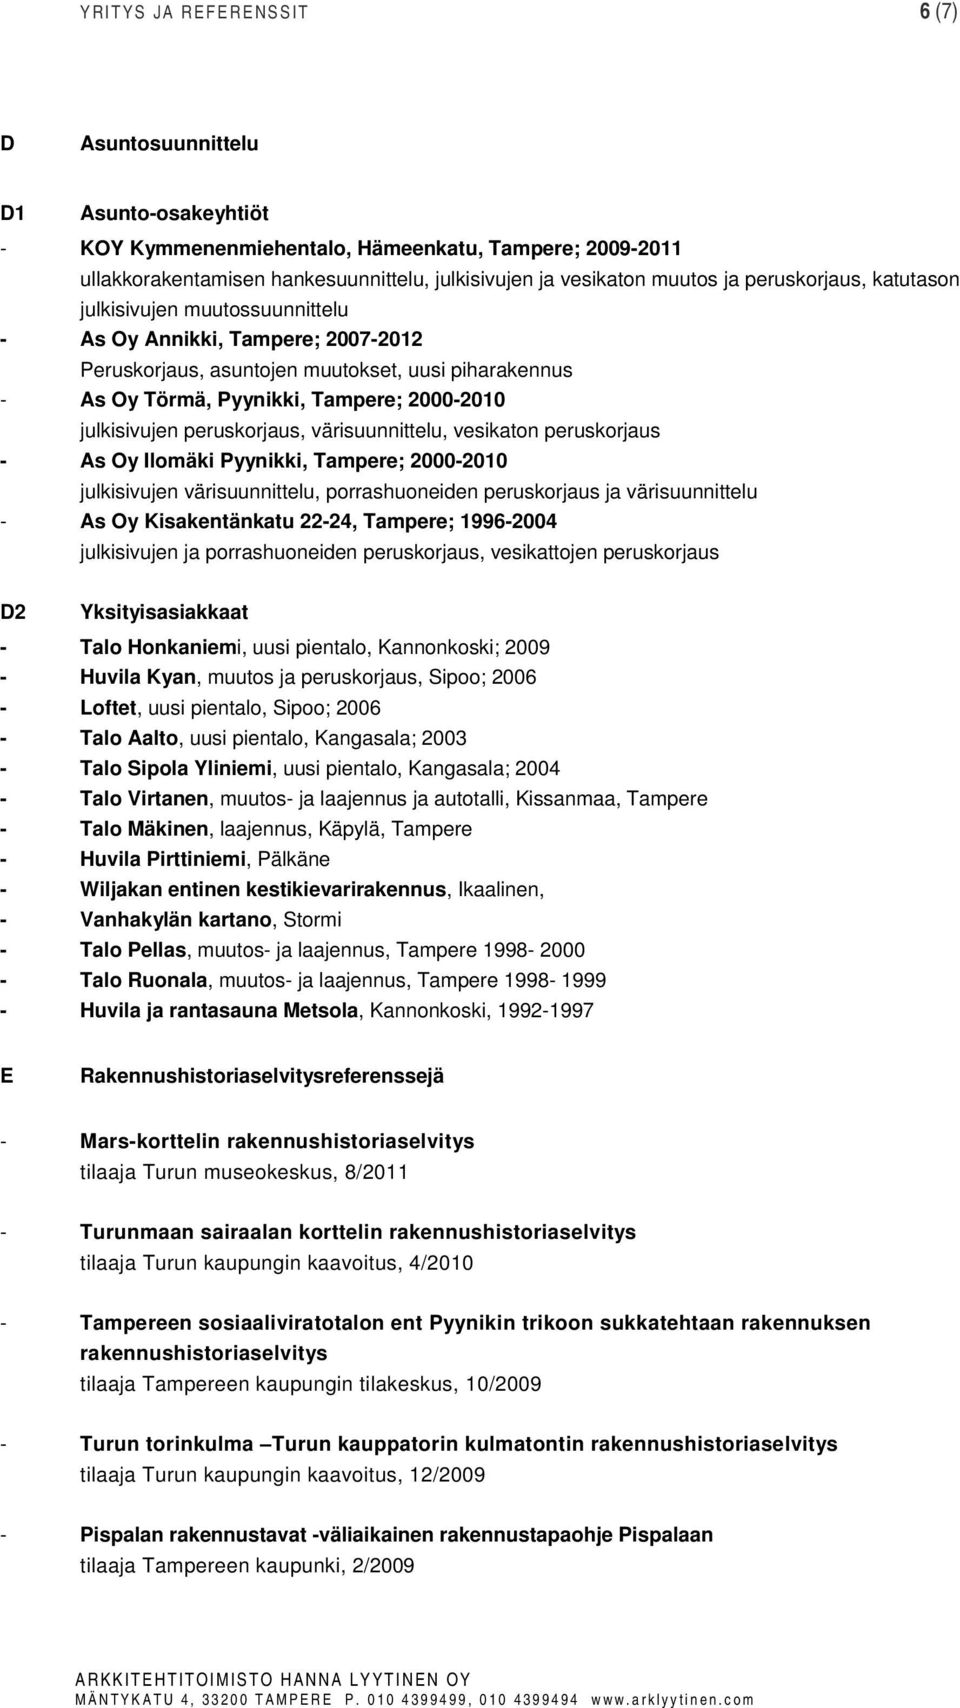 julkisivujen peruskorjaus, värisuunnittelu, vesikaton peruskorjaus - As Oy Ilomäki Pyynikki, Tampere; 2000-2010 julkisivujen värisuunnittelu, porrashuoneiden peruskorjaus ja värisuunnittelu - As Oy